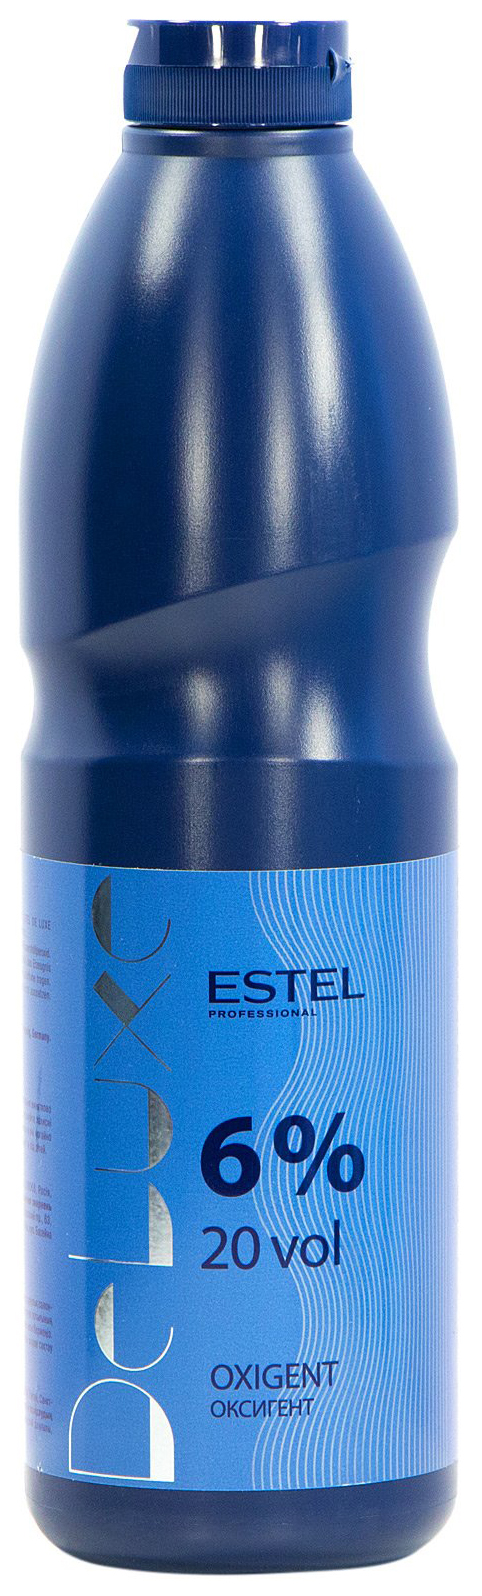 Проявитель Estel Professional De Luxe Oxigent 6% 900 мл estel professional сыворотка для волос экспресс увлажнение otium aqua 100 мл